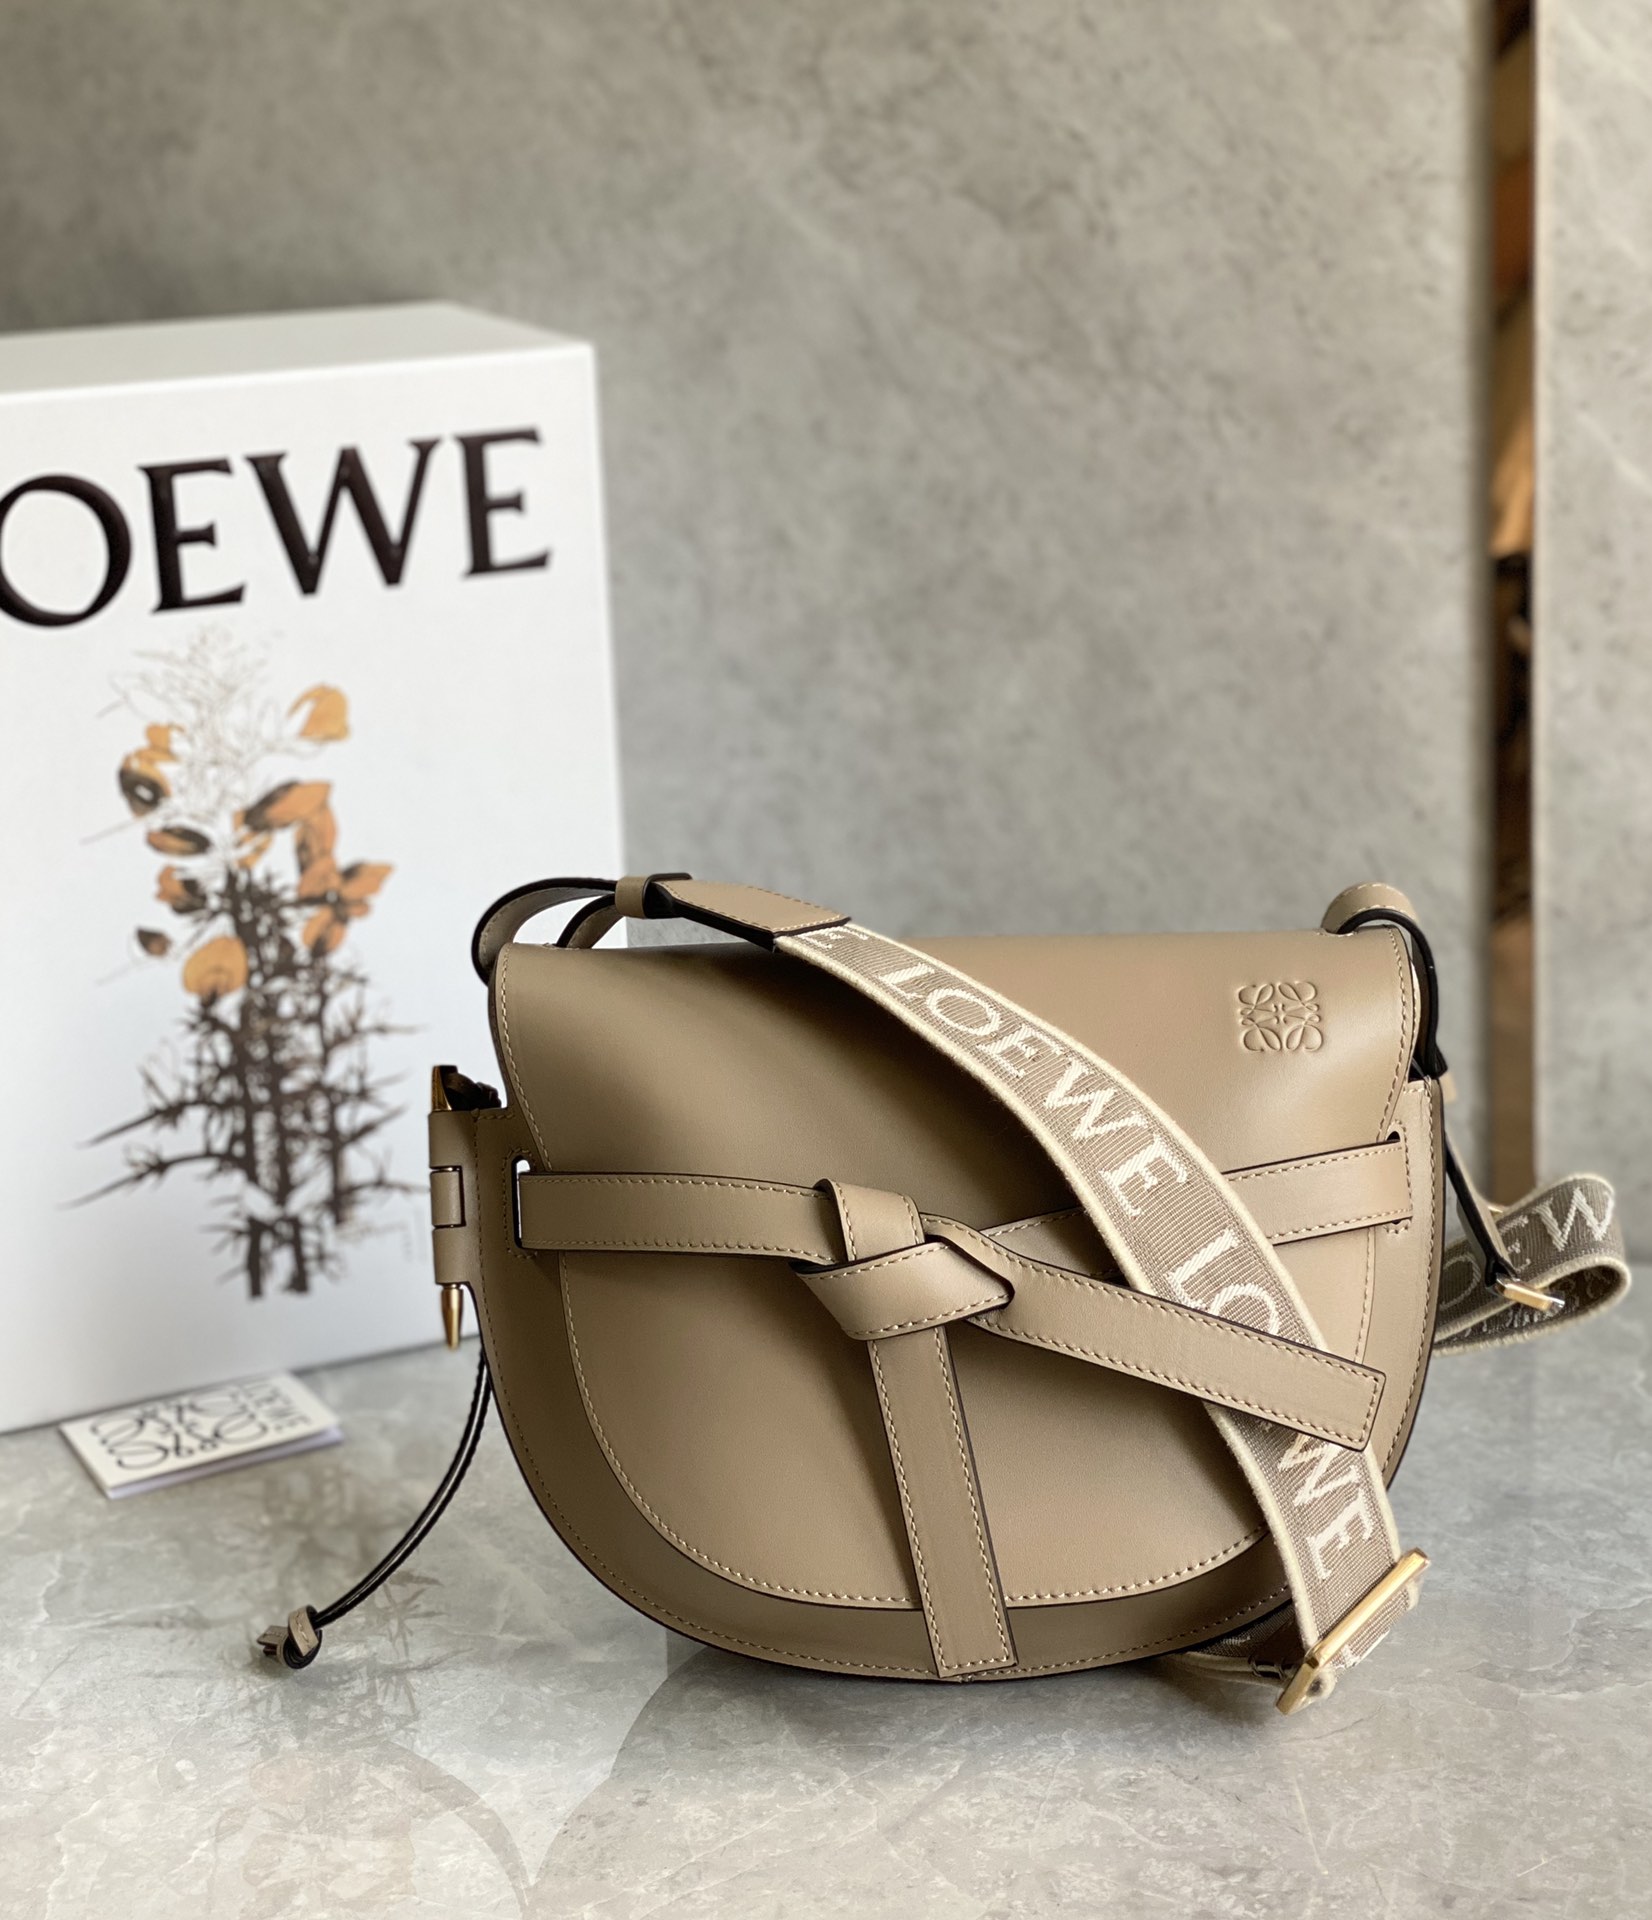 Loewe Gate Bags